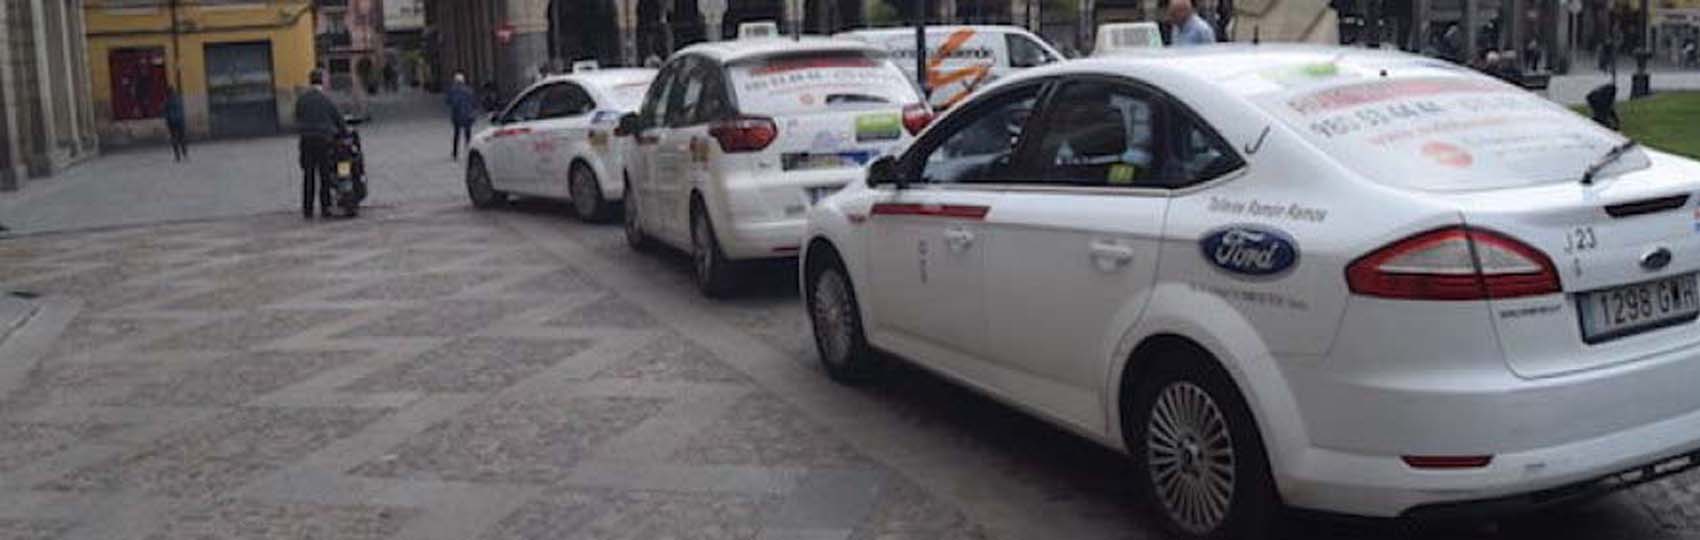 Noticias del sector del taxi y la movilidad en Zamora.  Mantente informado de todas las noticias del taxi de Zamora en el grupo de Facebook de Todo Taxi.